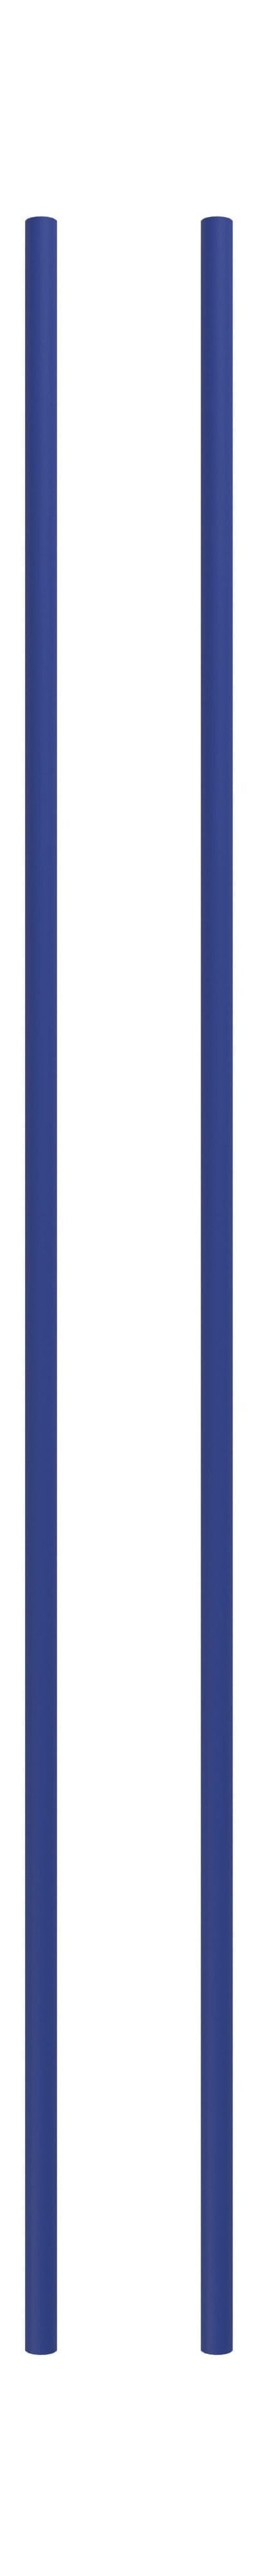 Sistema de estantería Moebe/Pierna de estantería de pared 115 cm de color azul de profundidad, conjunto de 2